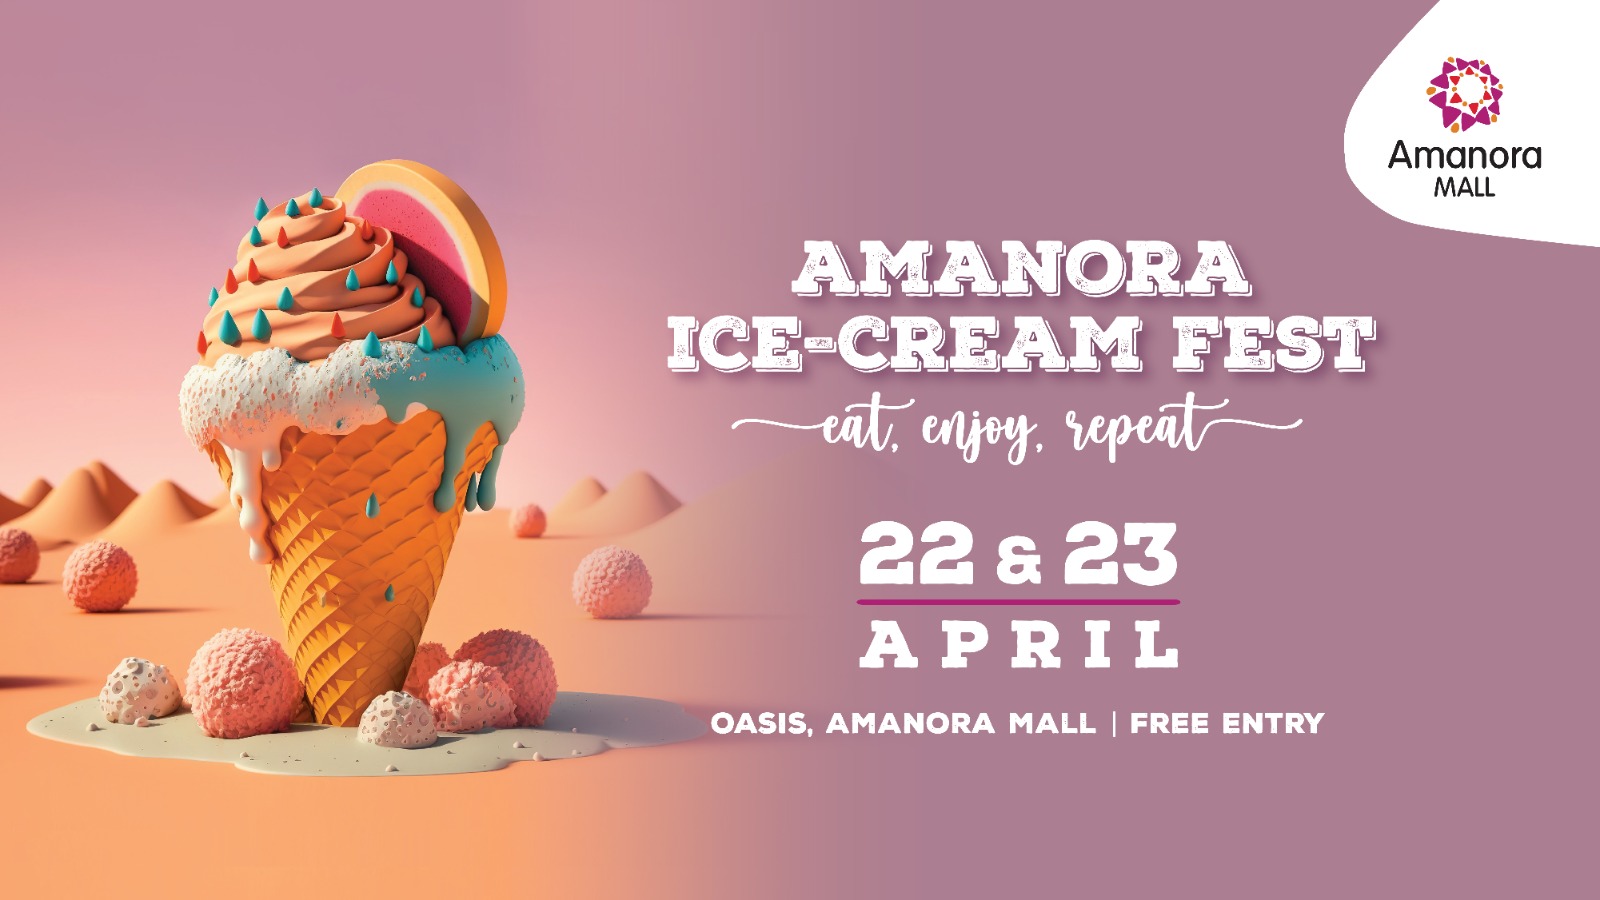 AMANORA ICE-CREAM FEST